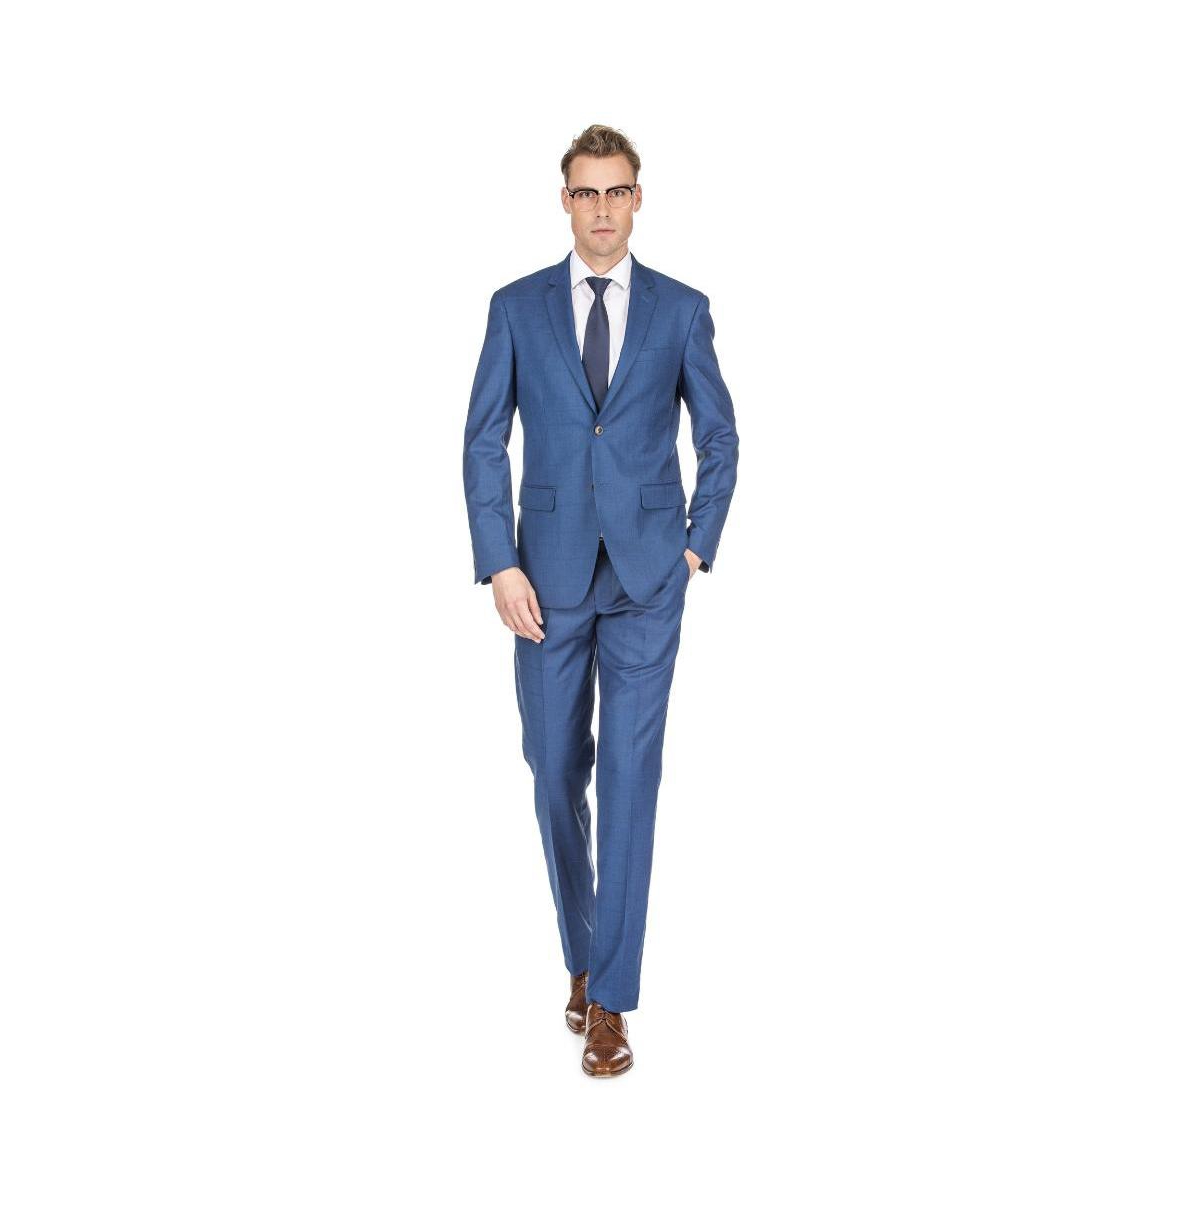 Brave man Men's Check Slim Fit 2pc Suits - Indigo